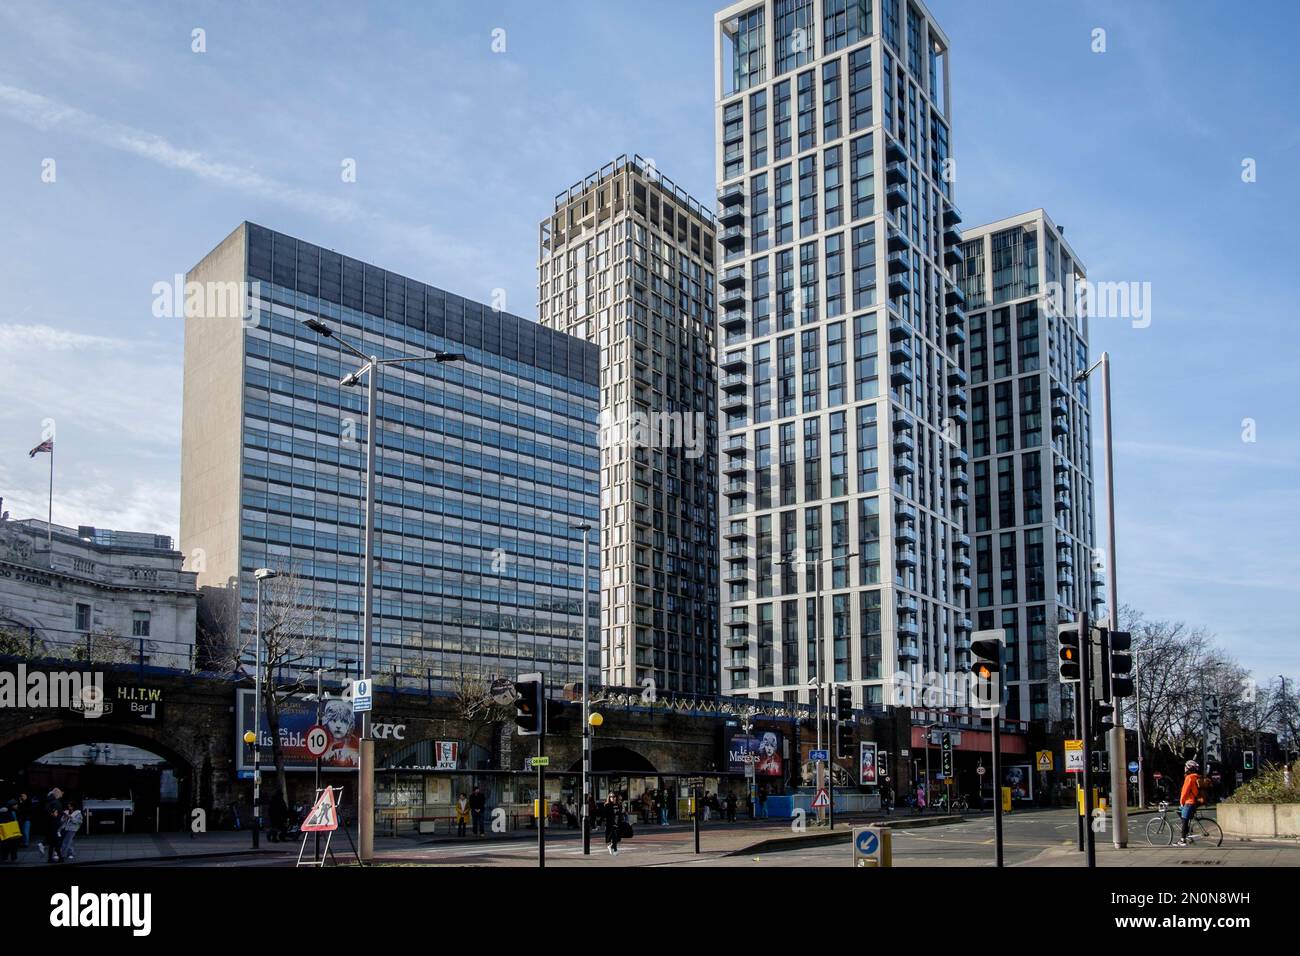 Elizabeth House, un immeuble de bureaux de 1960s à côté de la gare de Waterloo, dont la démolition et le réaménagement du site sont prévus. Londres. ROYAUME-UNI. Banque D'Images